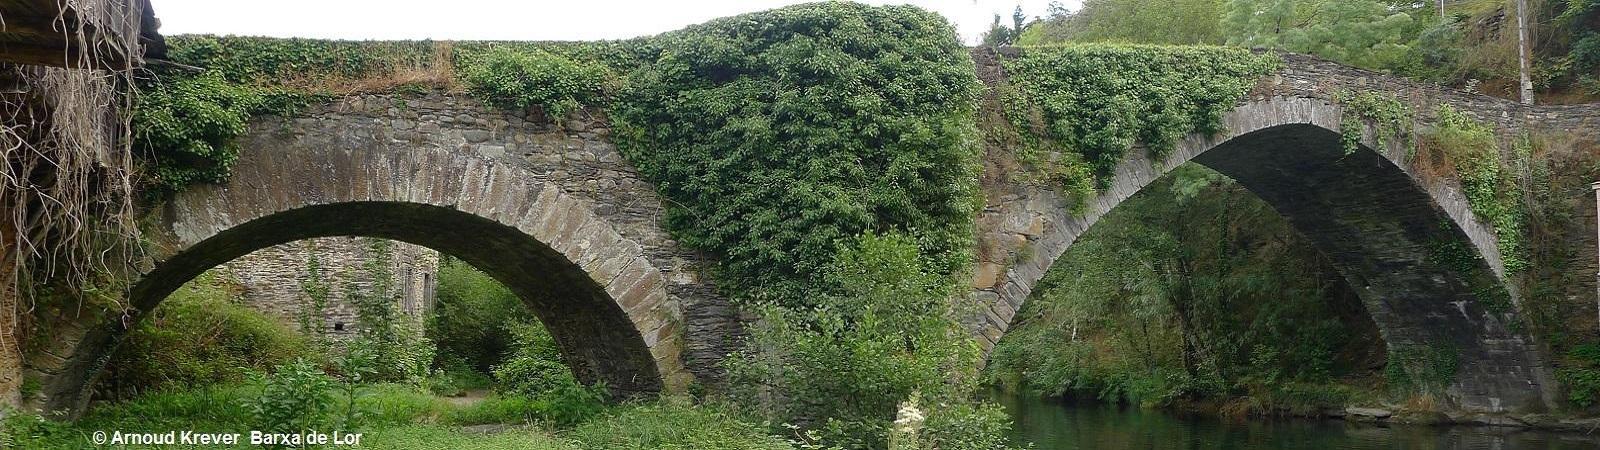 16Invier (265) BARXA DE LOR, Romeinse brug